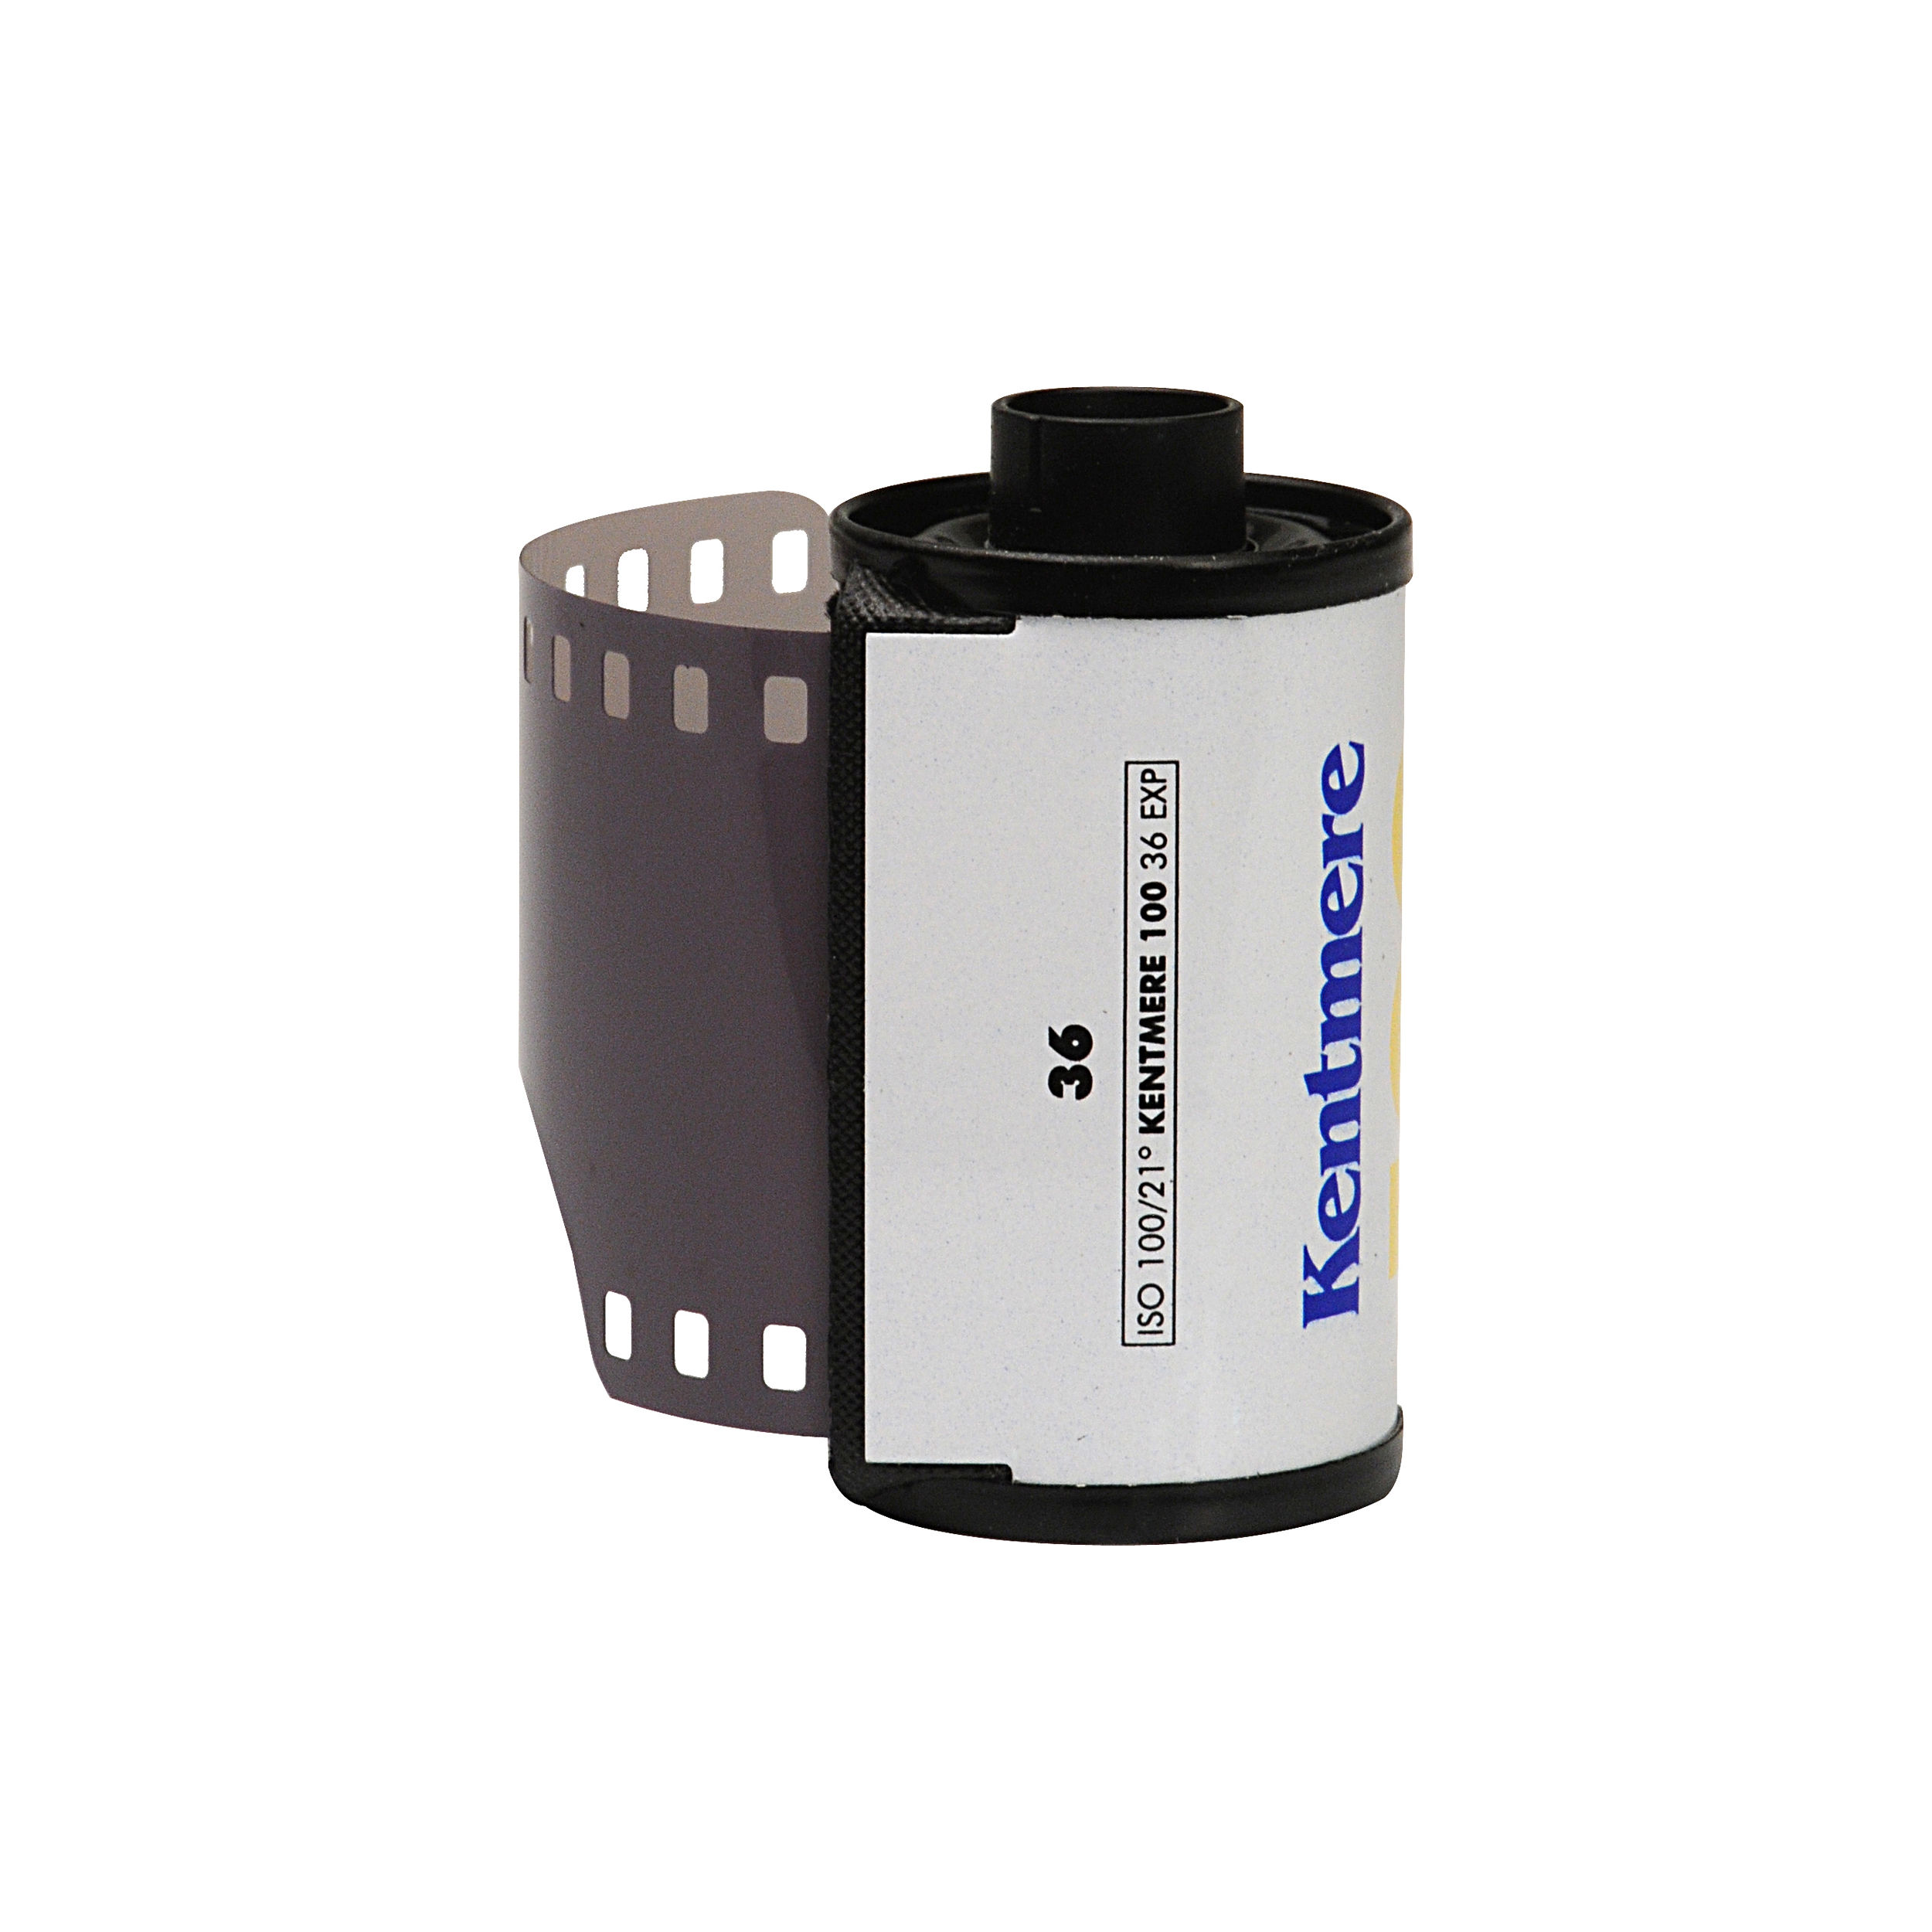 Kentmere Pan 100 Film négatif noir et blanc - Film de 35 mm - 36 expositions